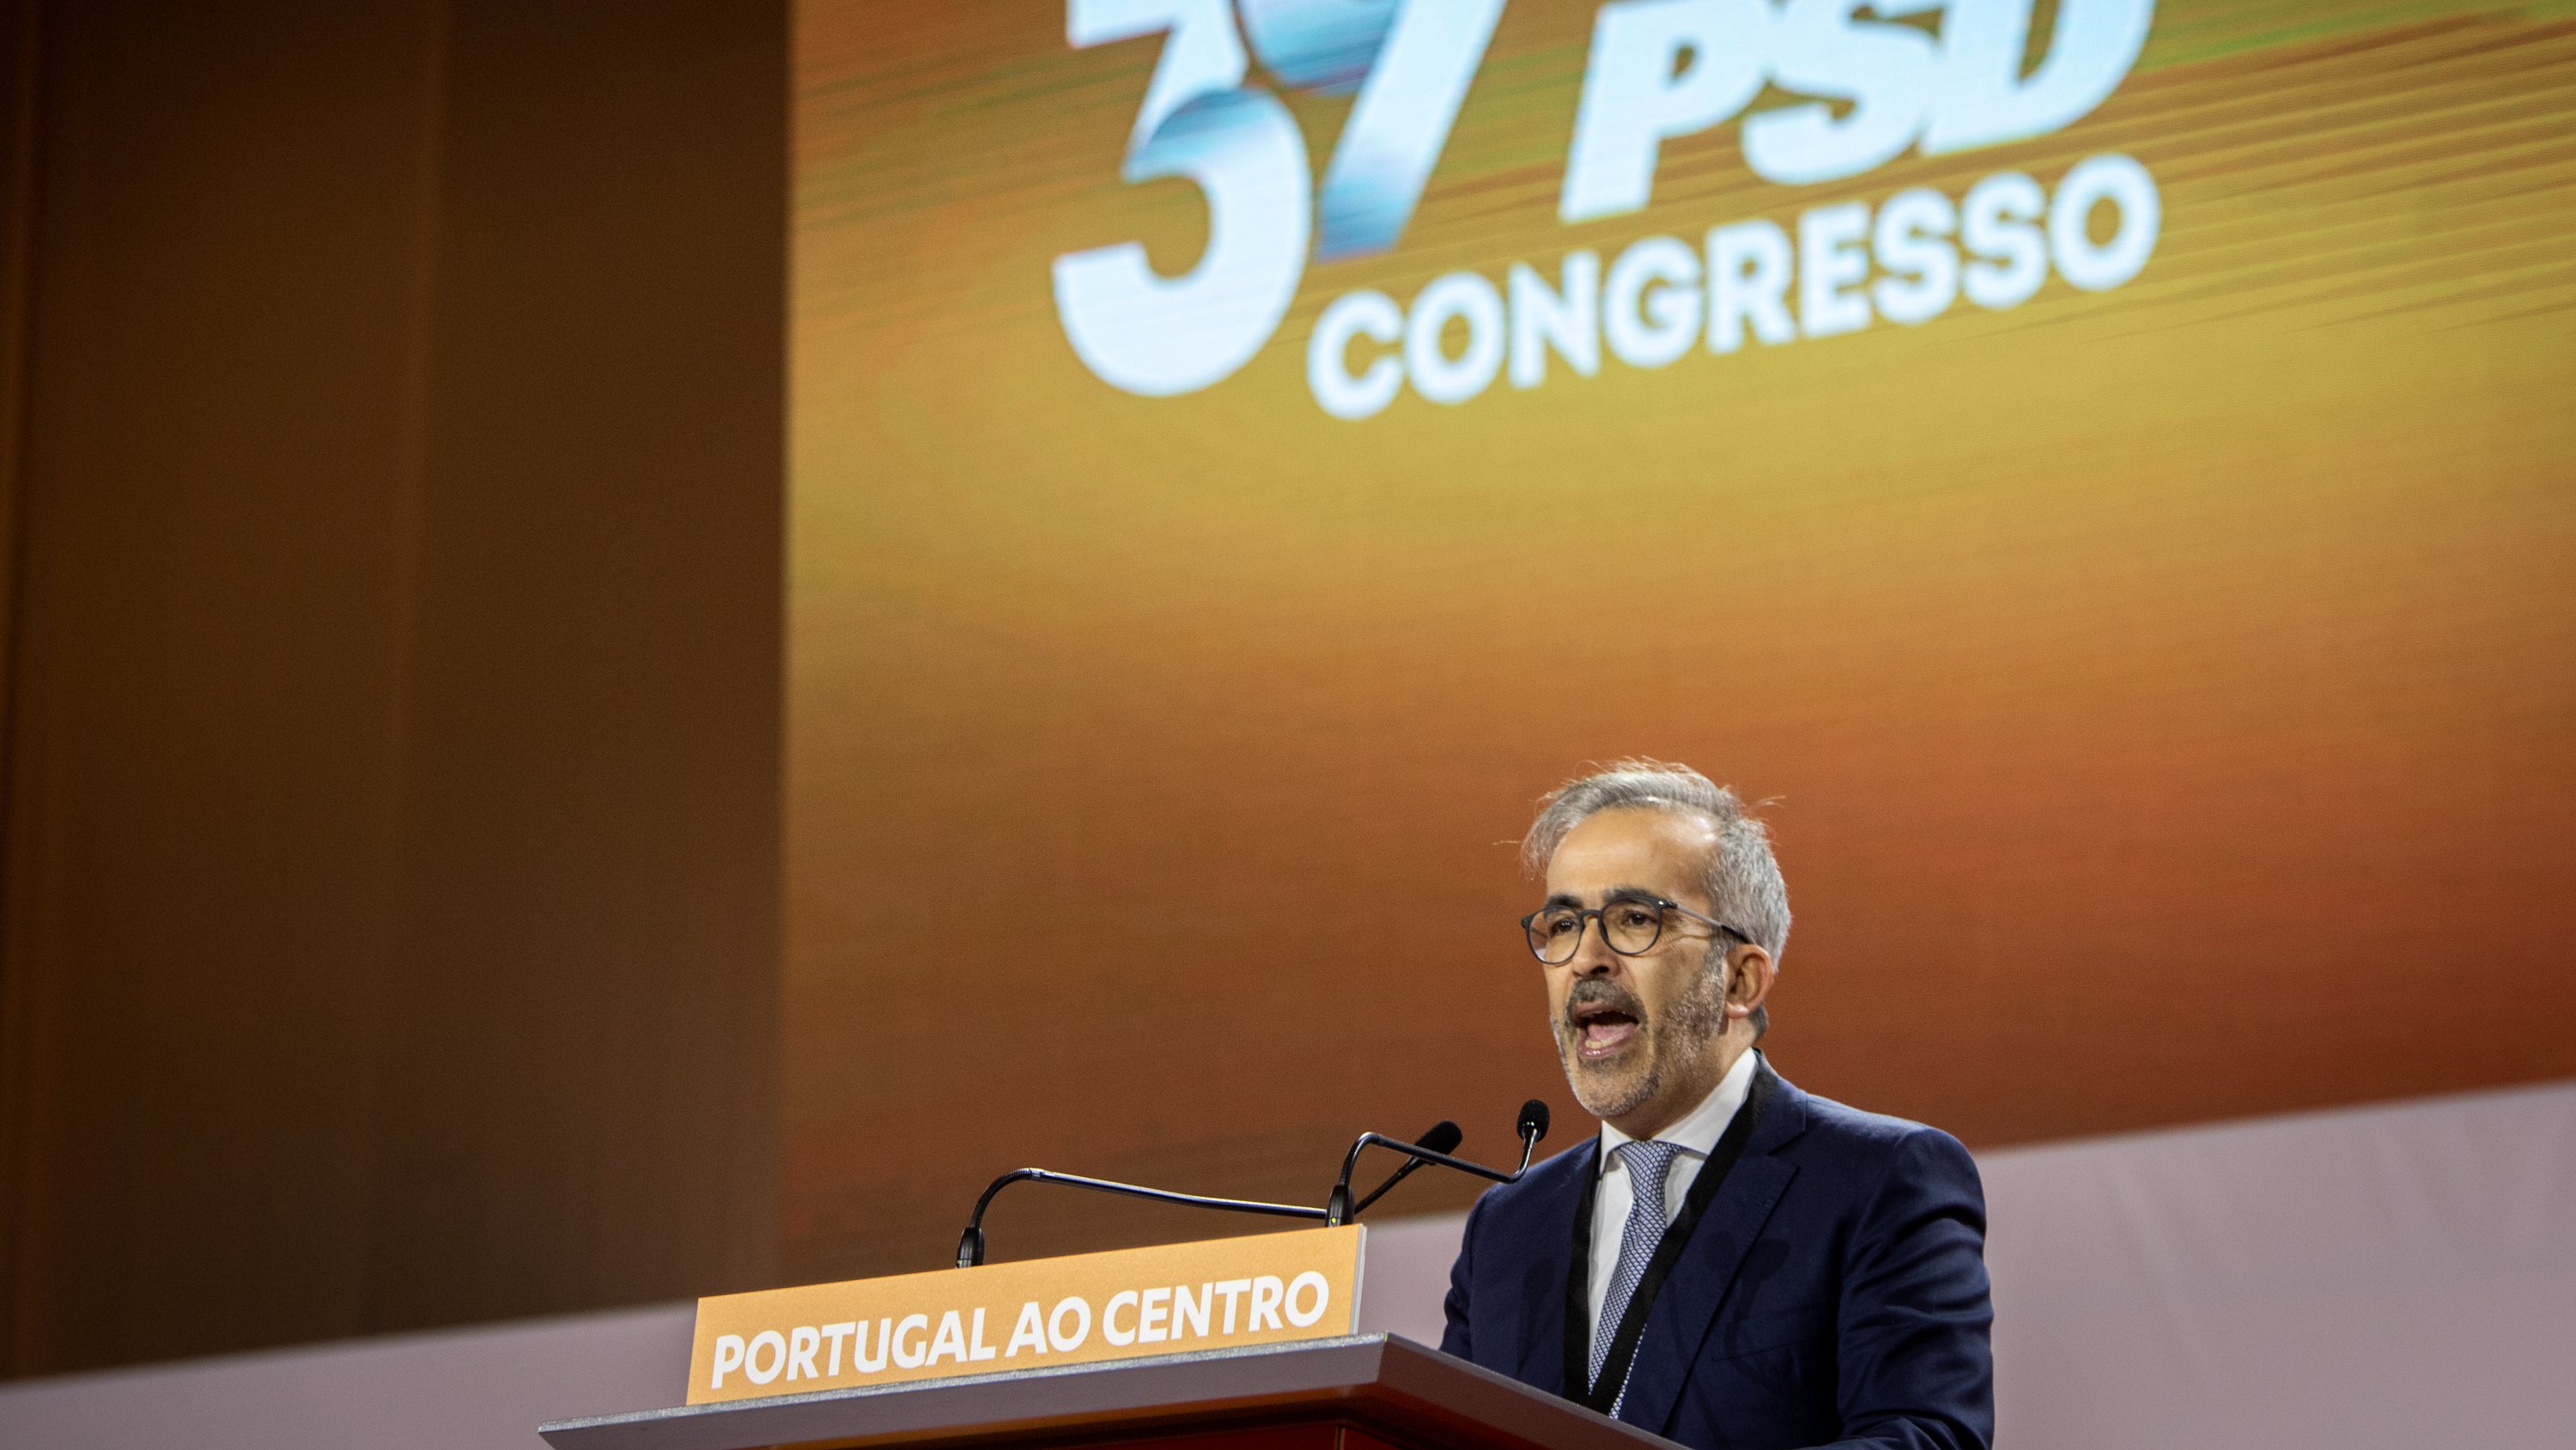 39º Congresso PSD (Partido Social Democrata) - intervenção de Paulo Rangel, no segundo dia de congresso. Santa Maria da Feira, Aveiro 18 de Dezembro de 2021 TOMÁS SILVA/OBSERVADOR